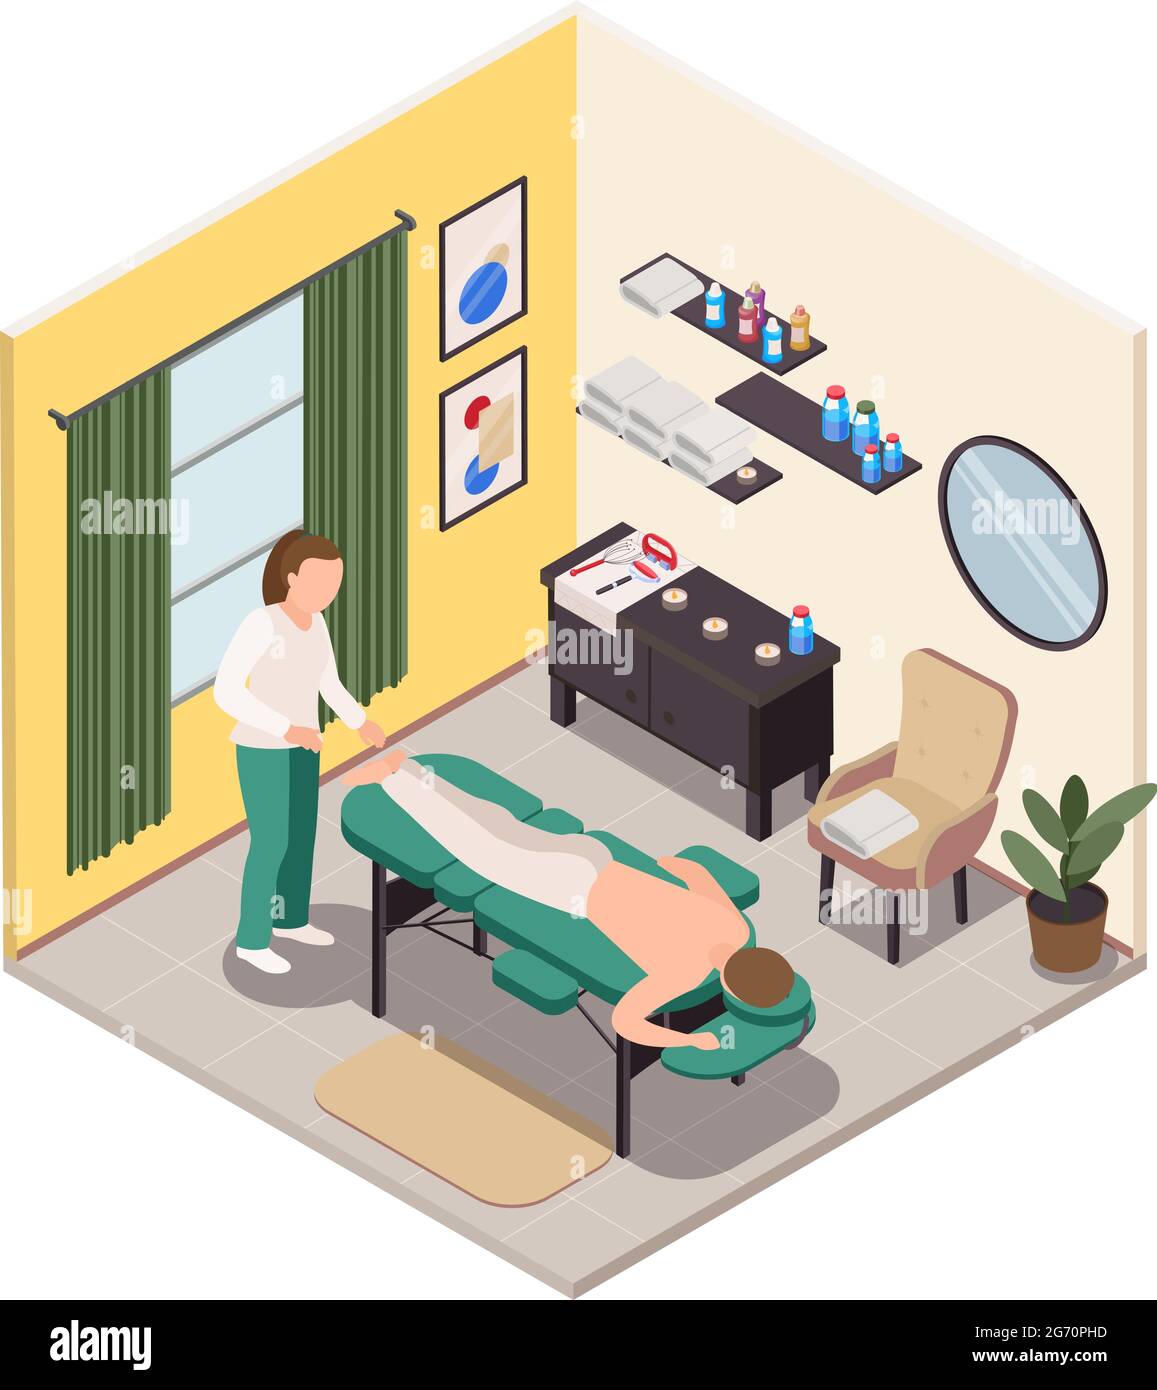 Massagetherapie isometrische Raumzusammensetzung mit Innenansicht des Wellnessraums Massage Couch Möbel und Menschen Vektor Illustration Stock Vektor